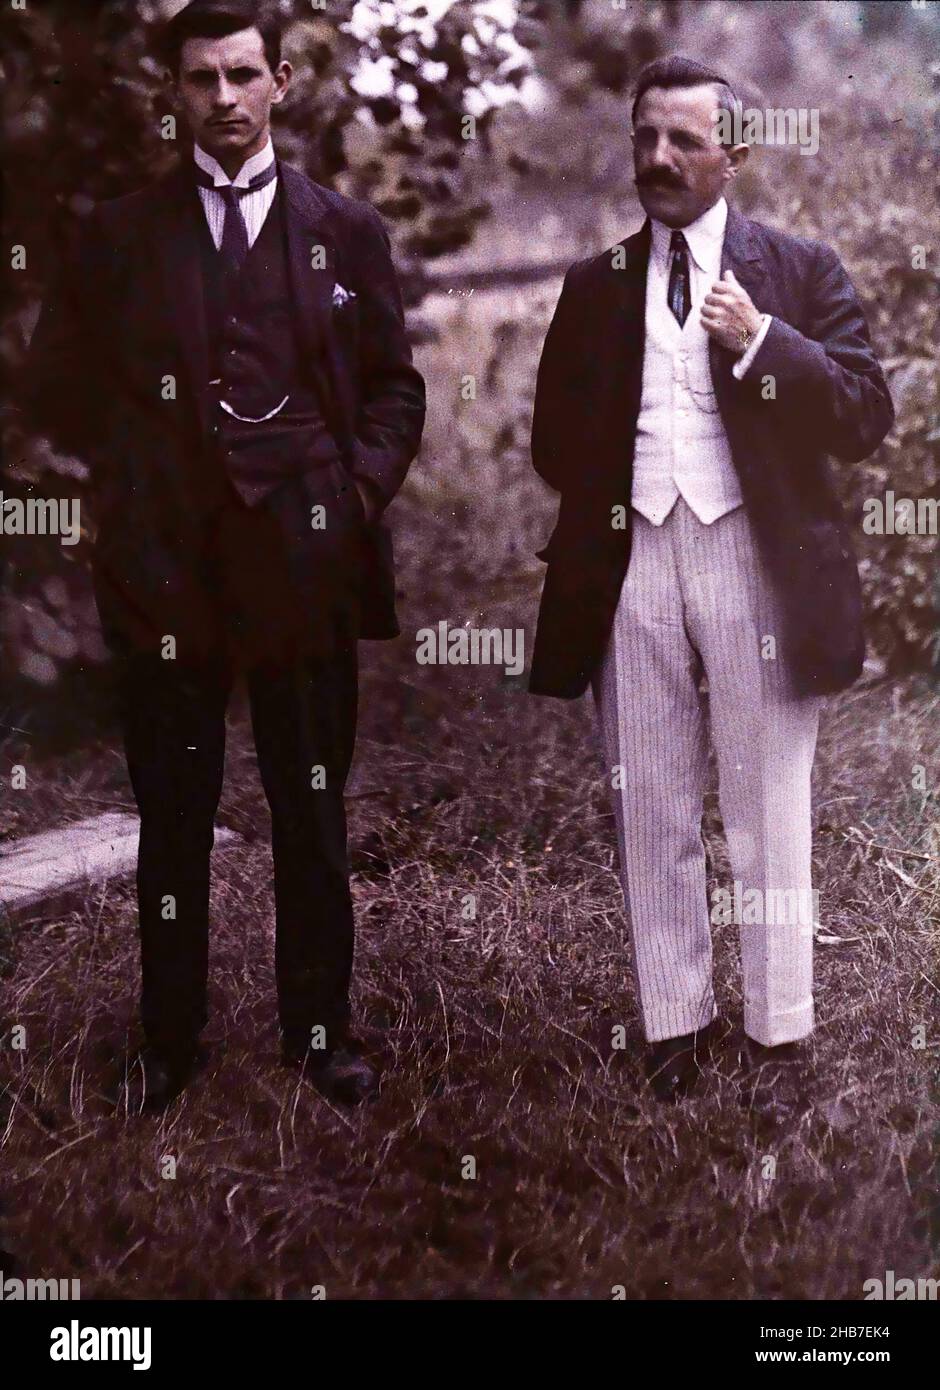 Zwei Männer in voller Länge, fotografiert in der Natur, anonym, c. 1910 - c. 1940, Glas, Höhe 119 mm × Breite 89 mm Stockfoto